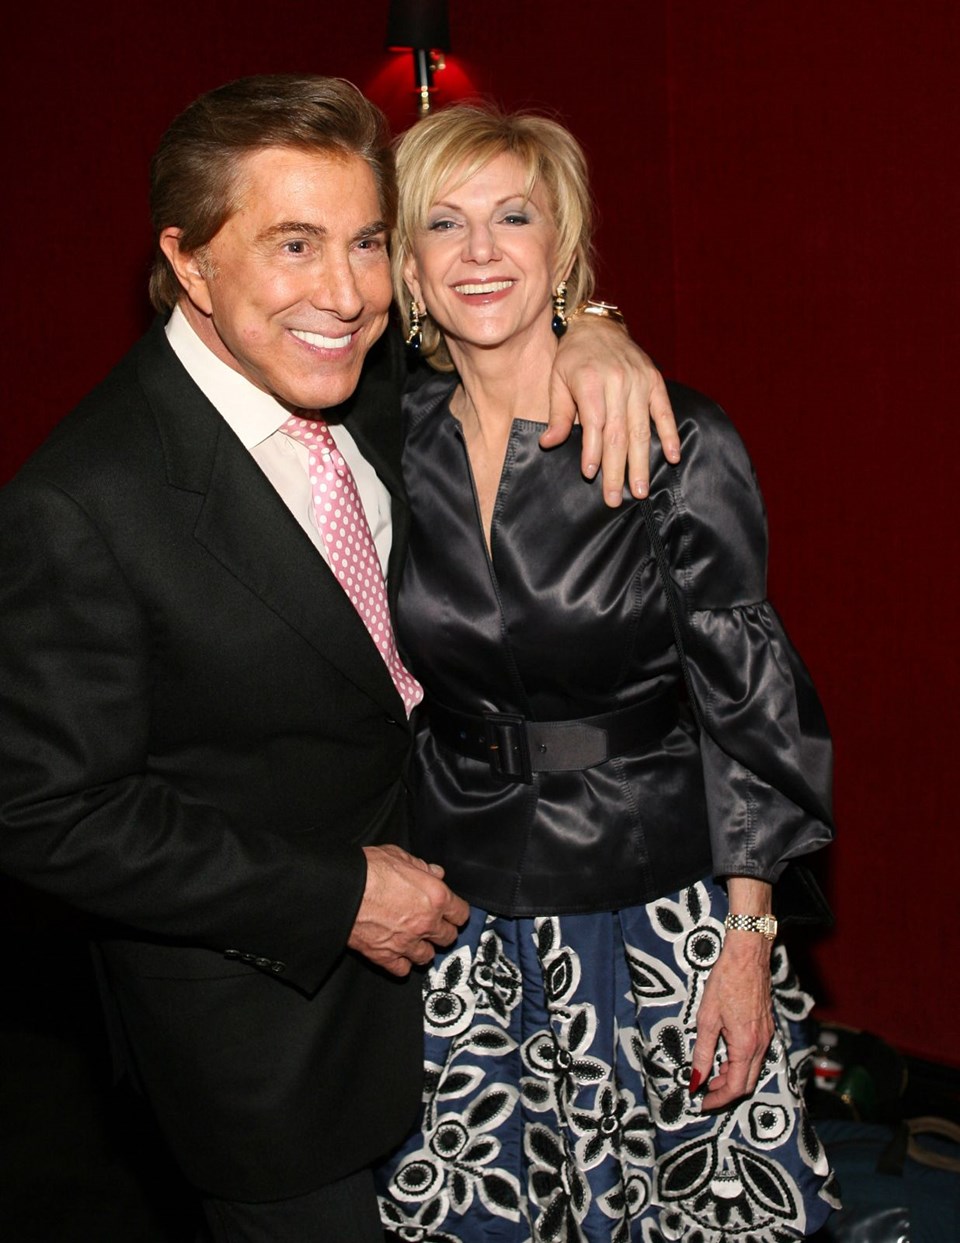 4. Steve ve Elaine Wynn 2010 - 1 milyar dolar